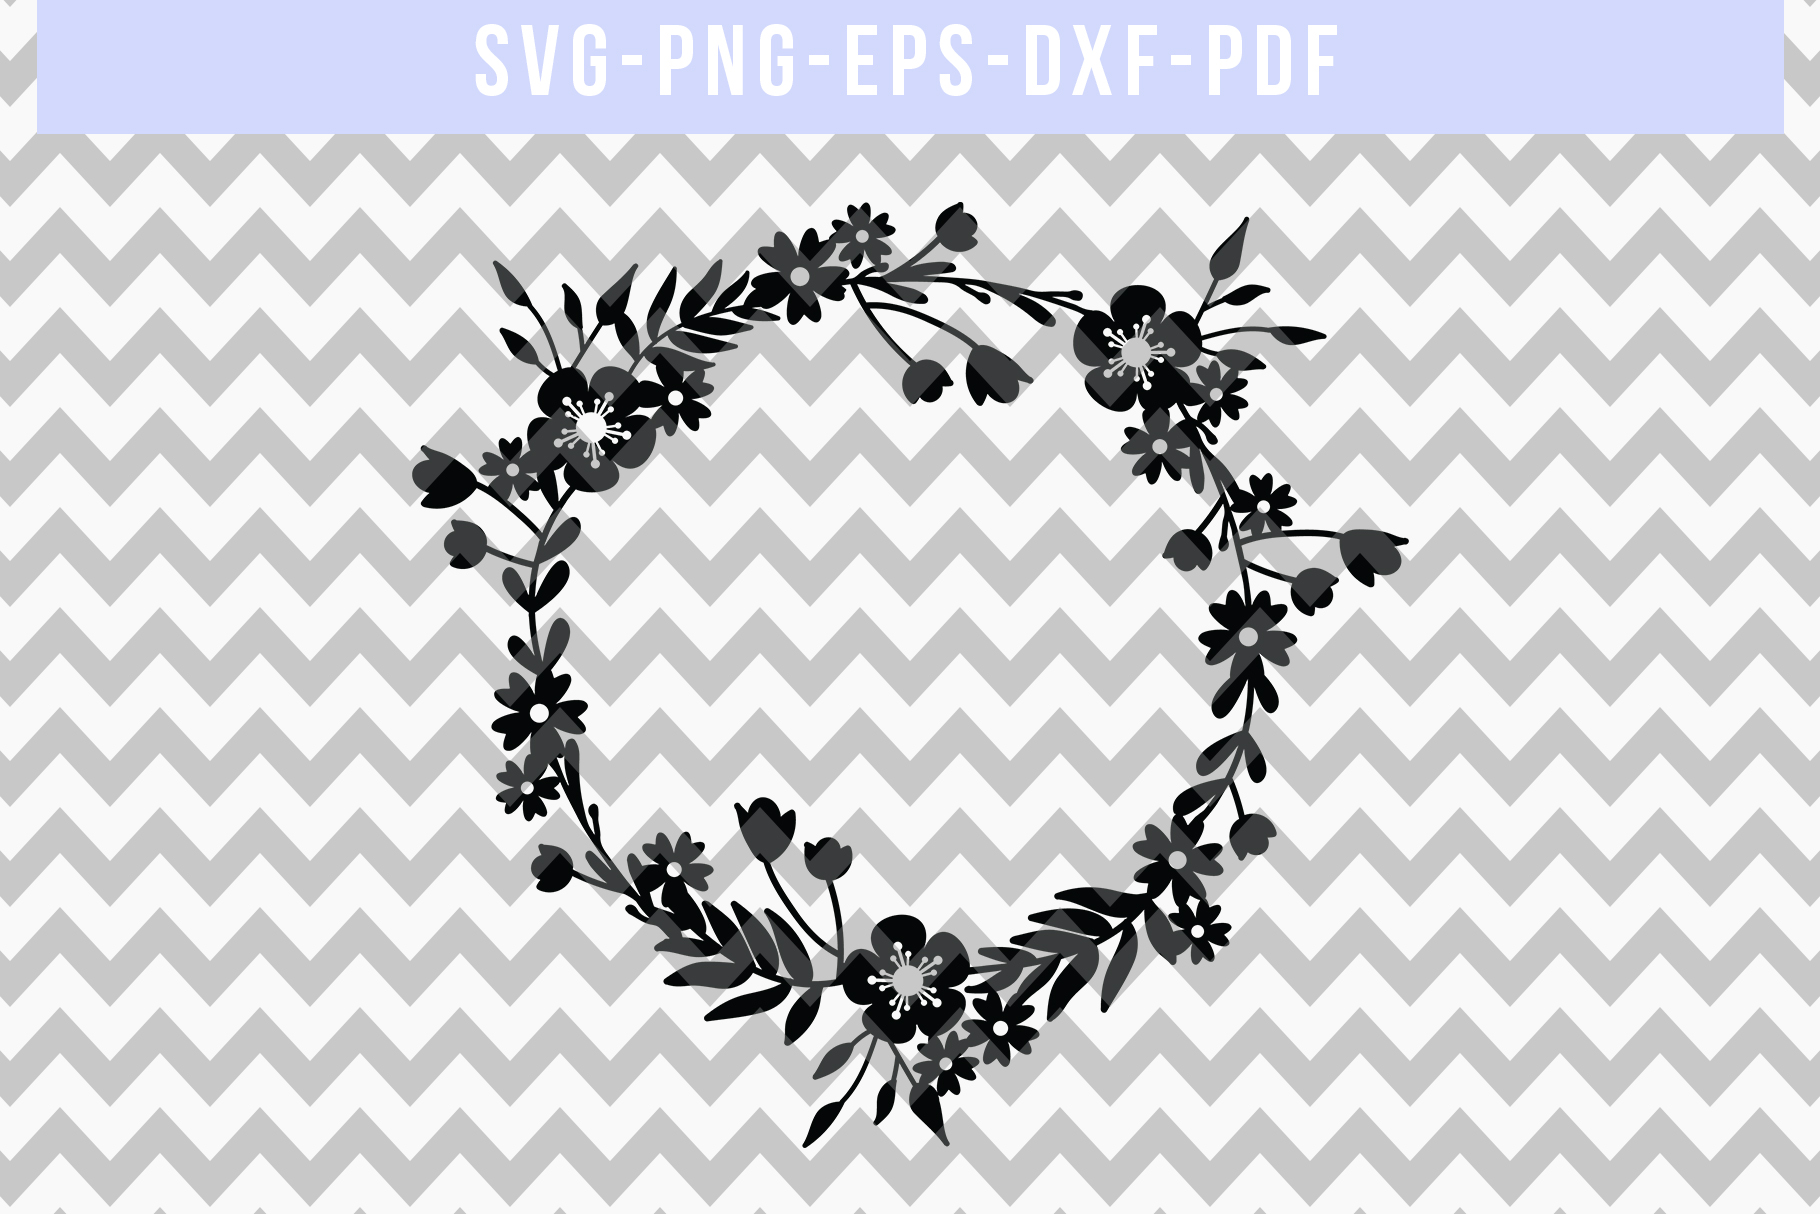 Flower Wreath SVG Cut File, Laurel Papercut, DXF, PDF, PNG